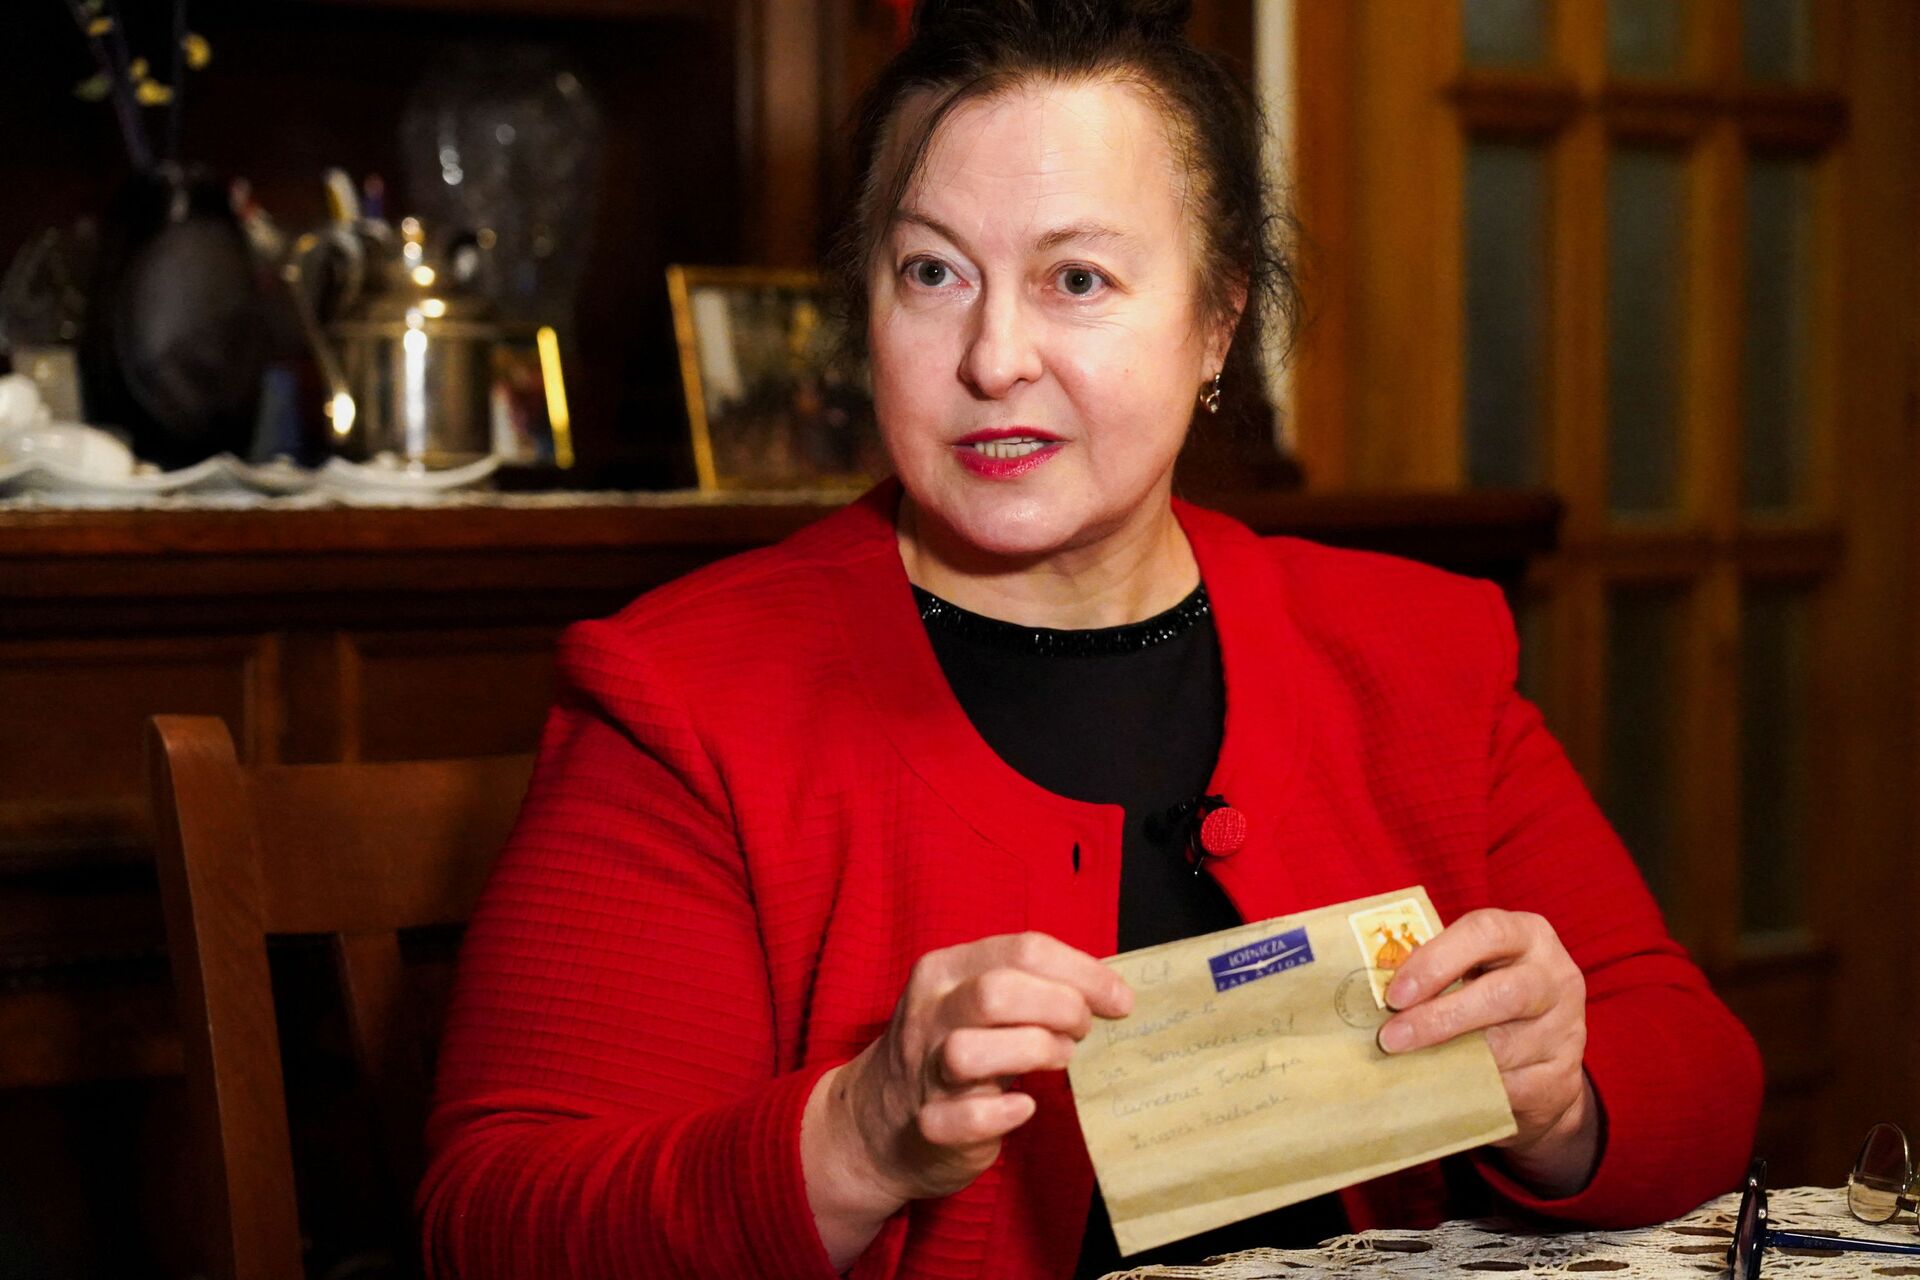 Genovefa Klonovska recebeu 'carta perdida' depois de 50 anos - Sputnik Brasil, 1920, 28.01.2022